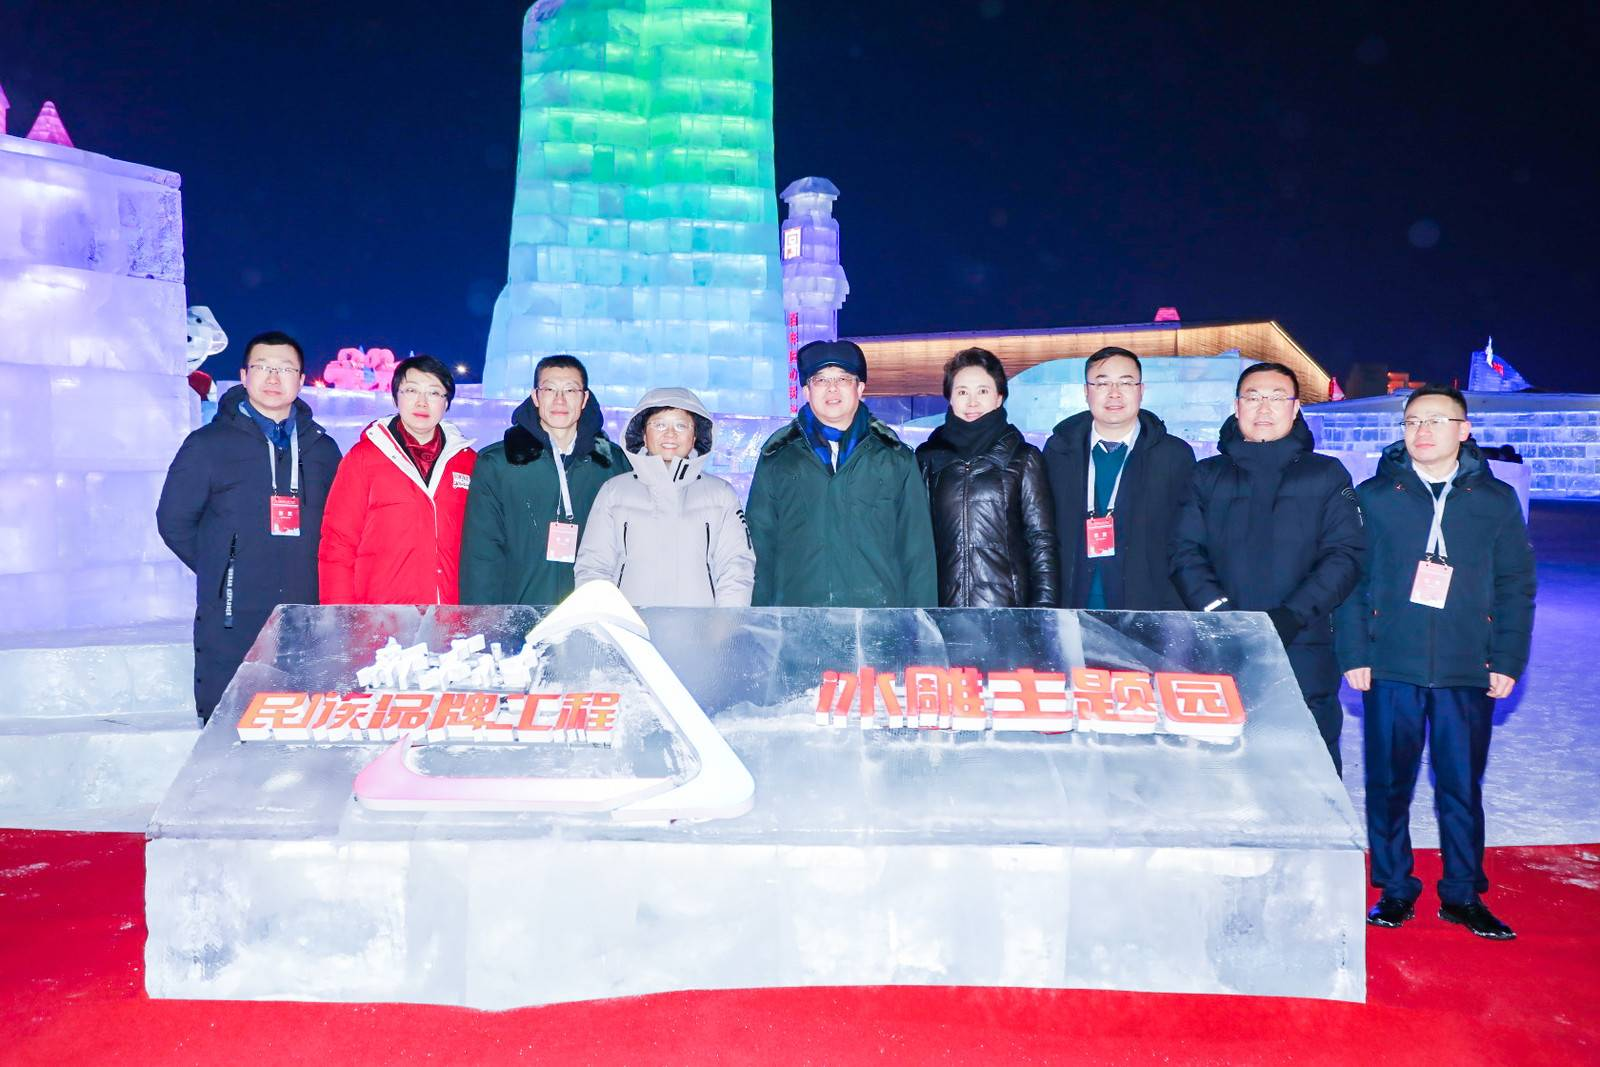 京东吉祥物冰雕亮相哈尔滨冰雪大世界 新华社民族品牌工程主题园